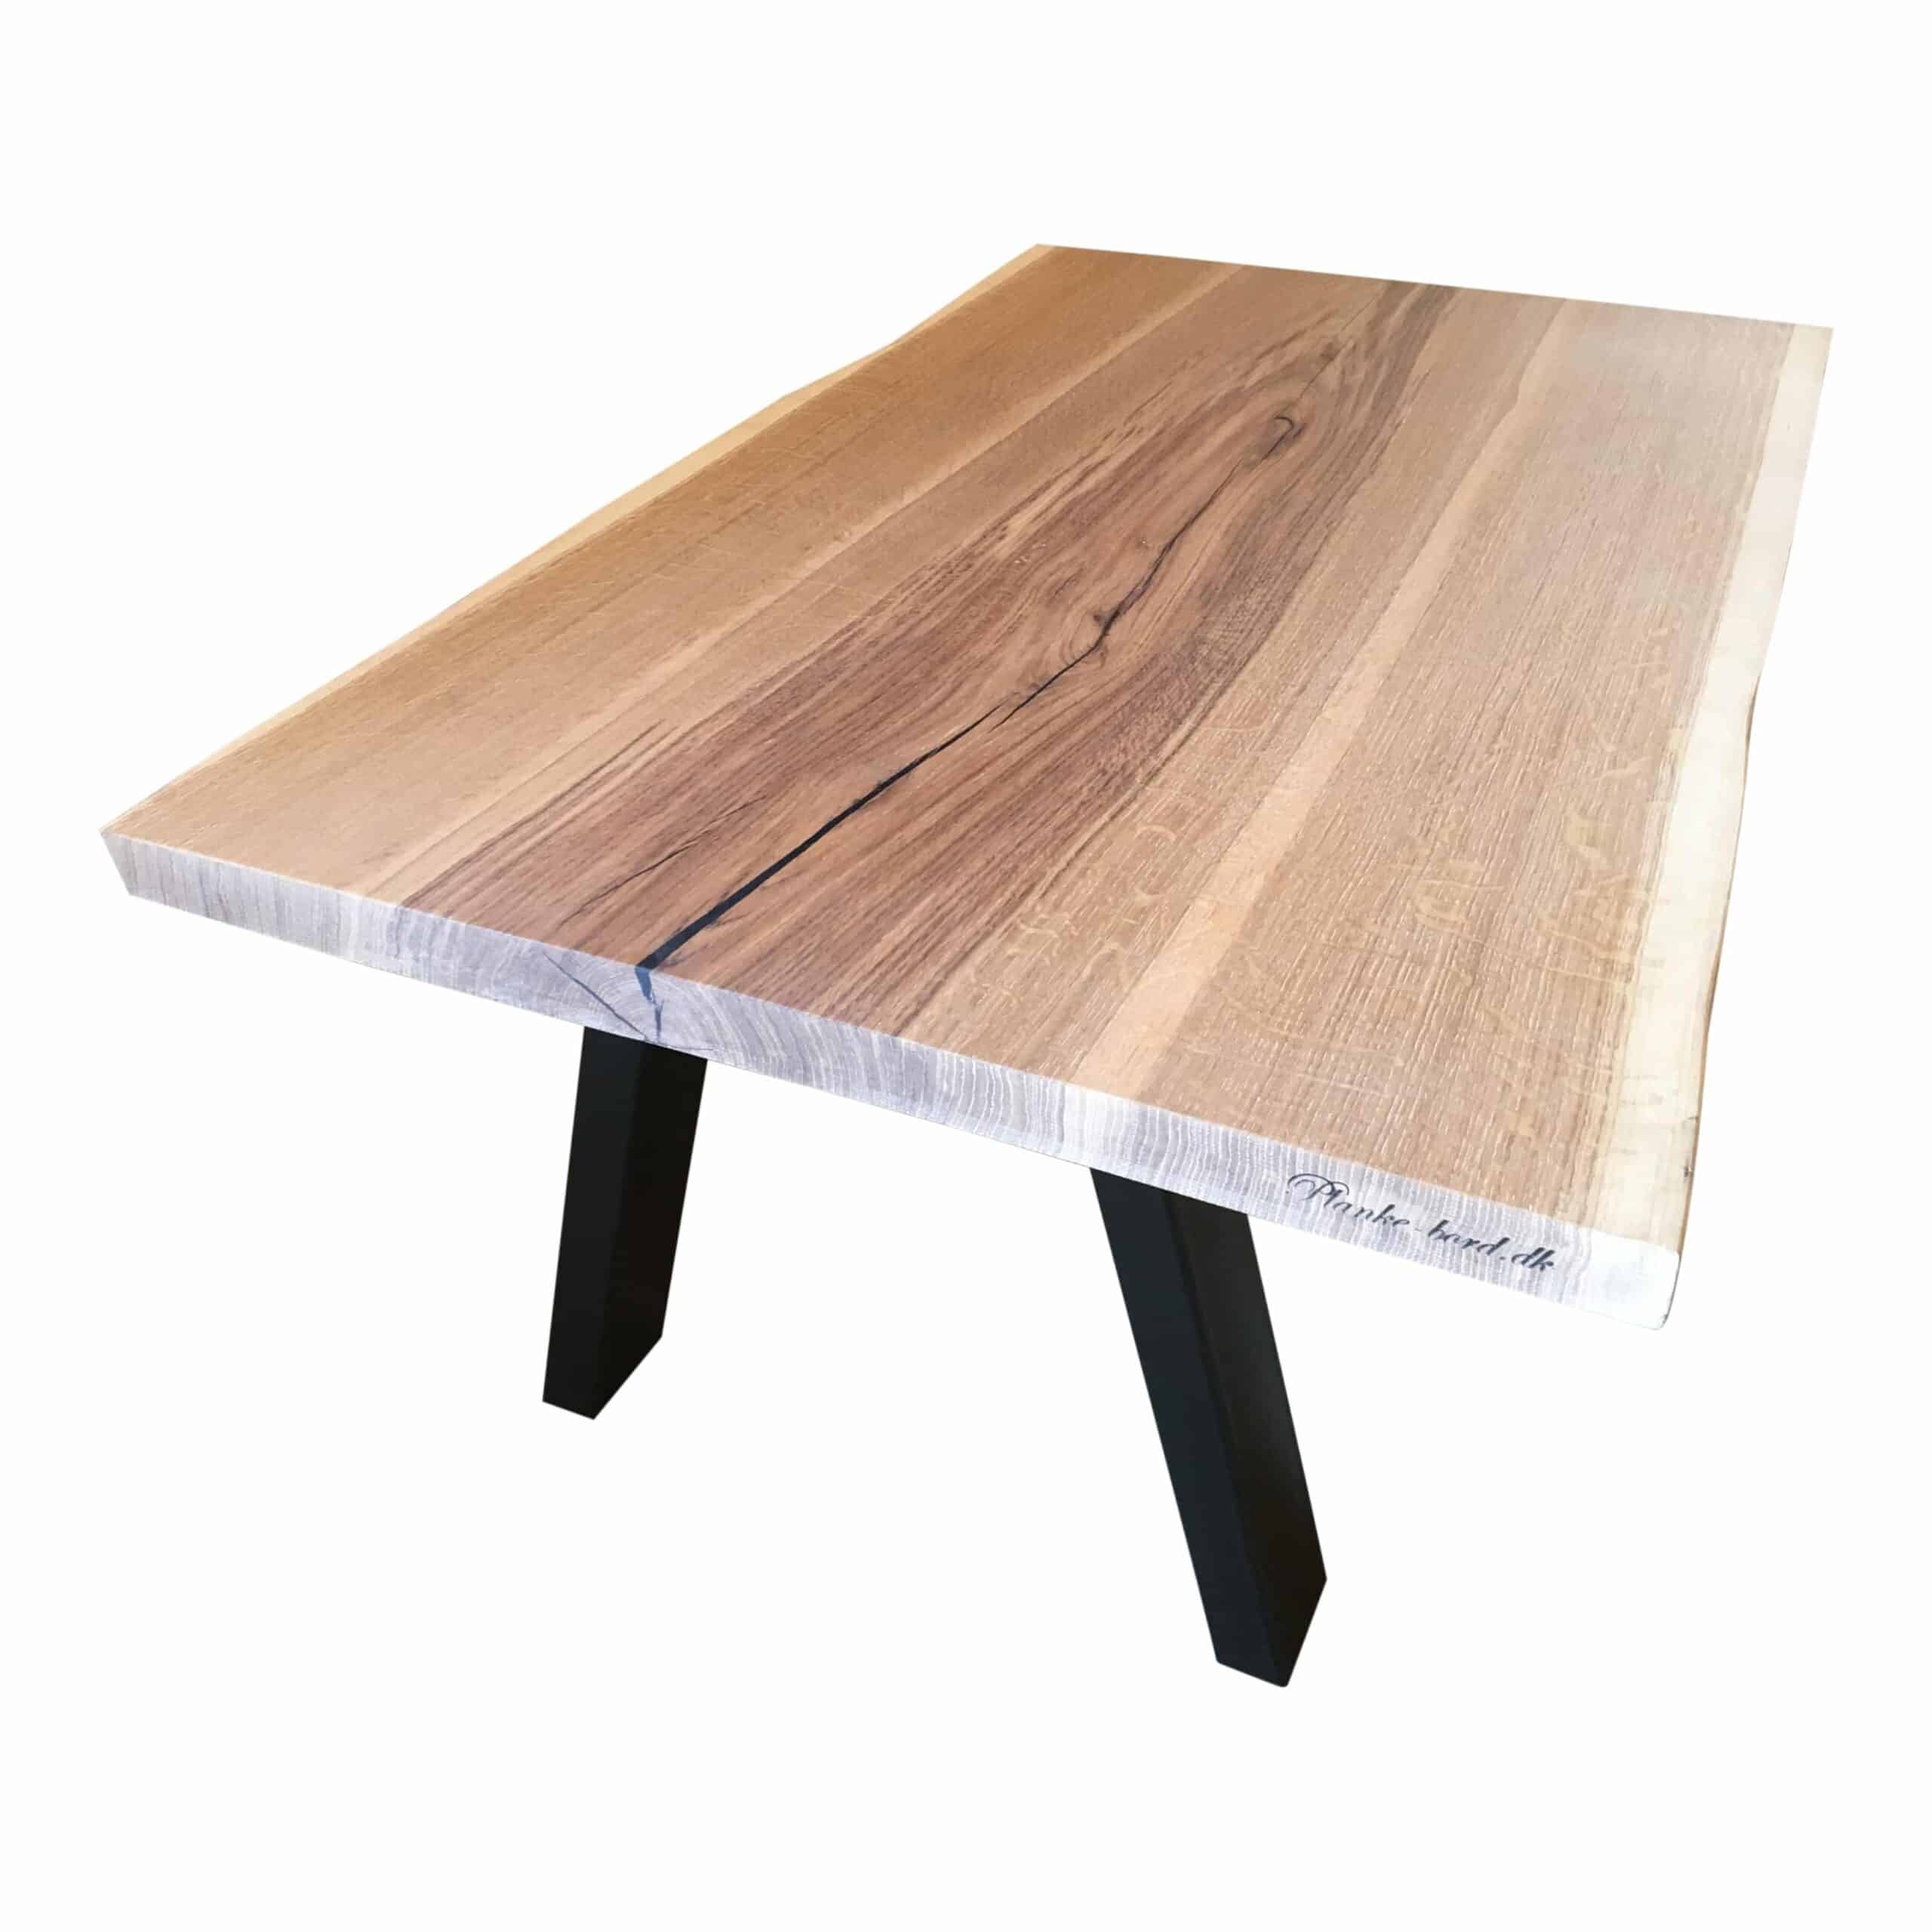 Sofabord - Eg - 1 - Hvid olie - Sofabord i planker